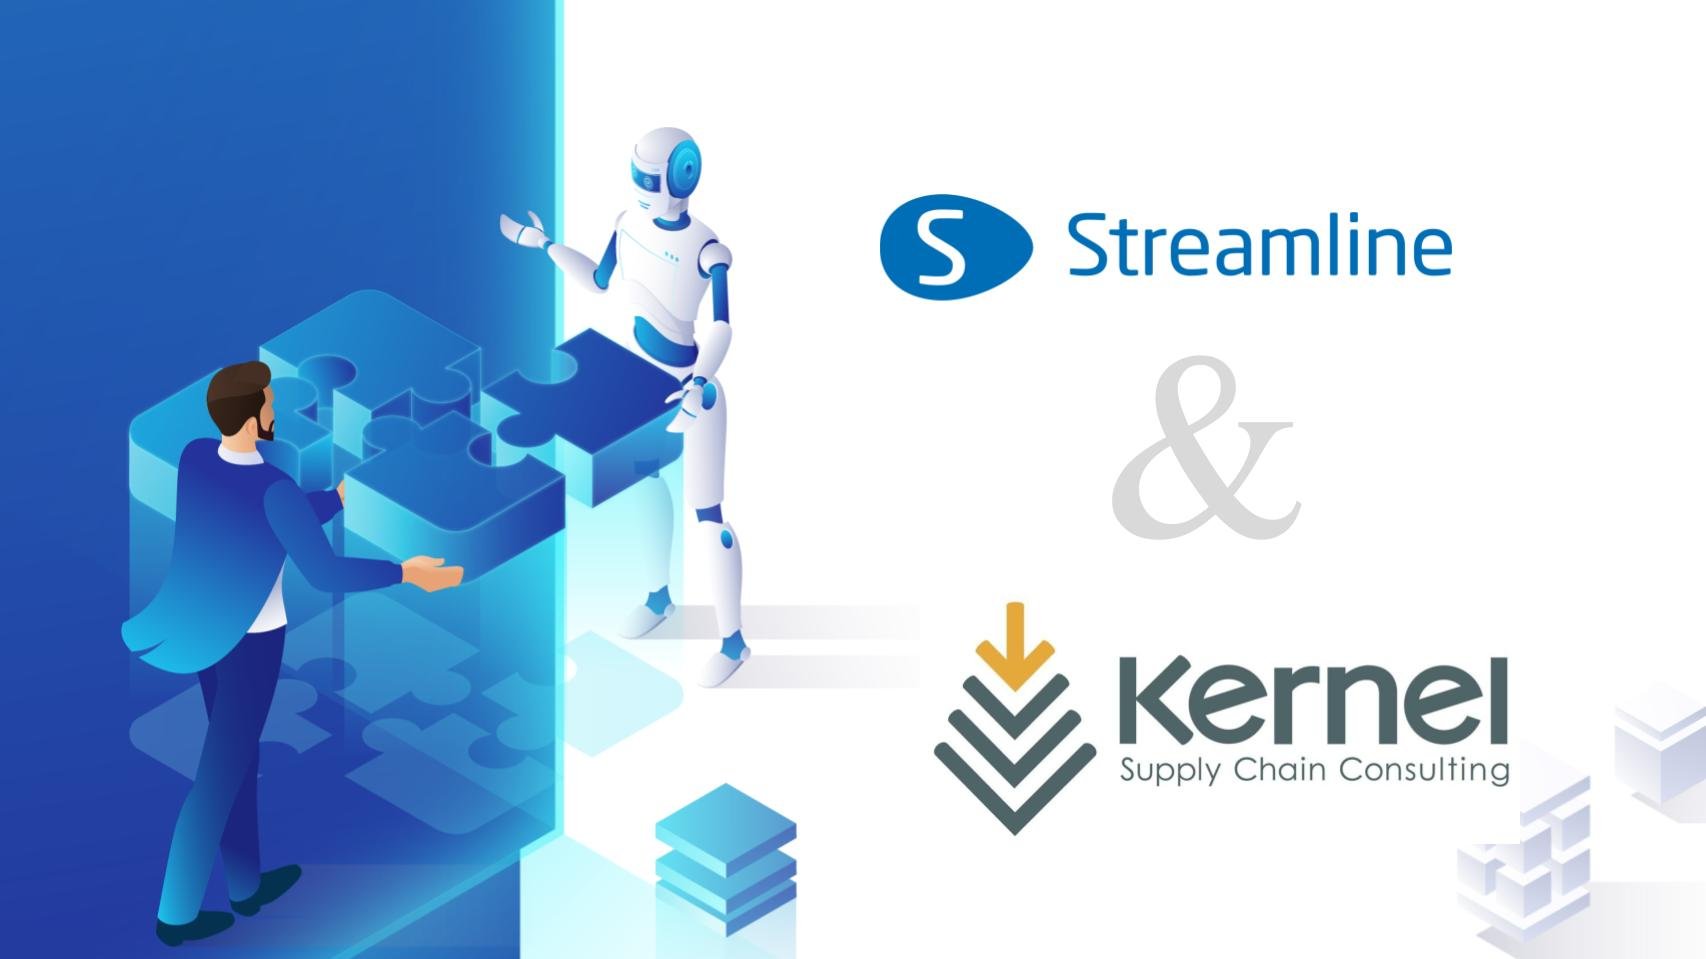 GMDH Streamline et Kernel Supply Chain Consulting annoncent un partenariat précieux